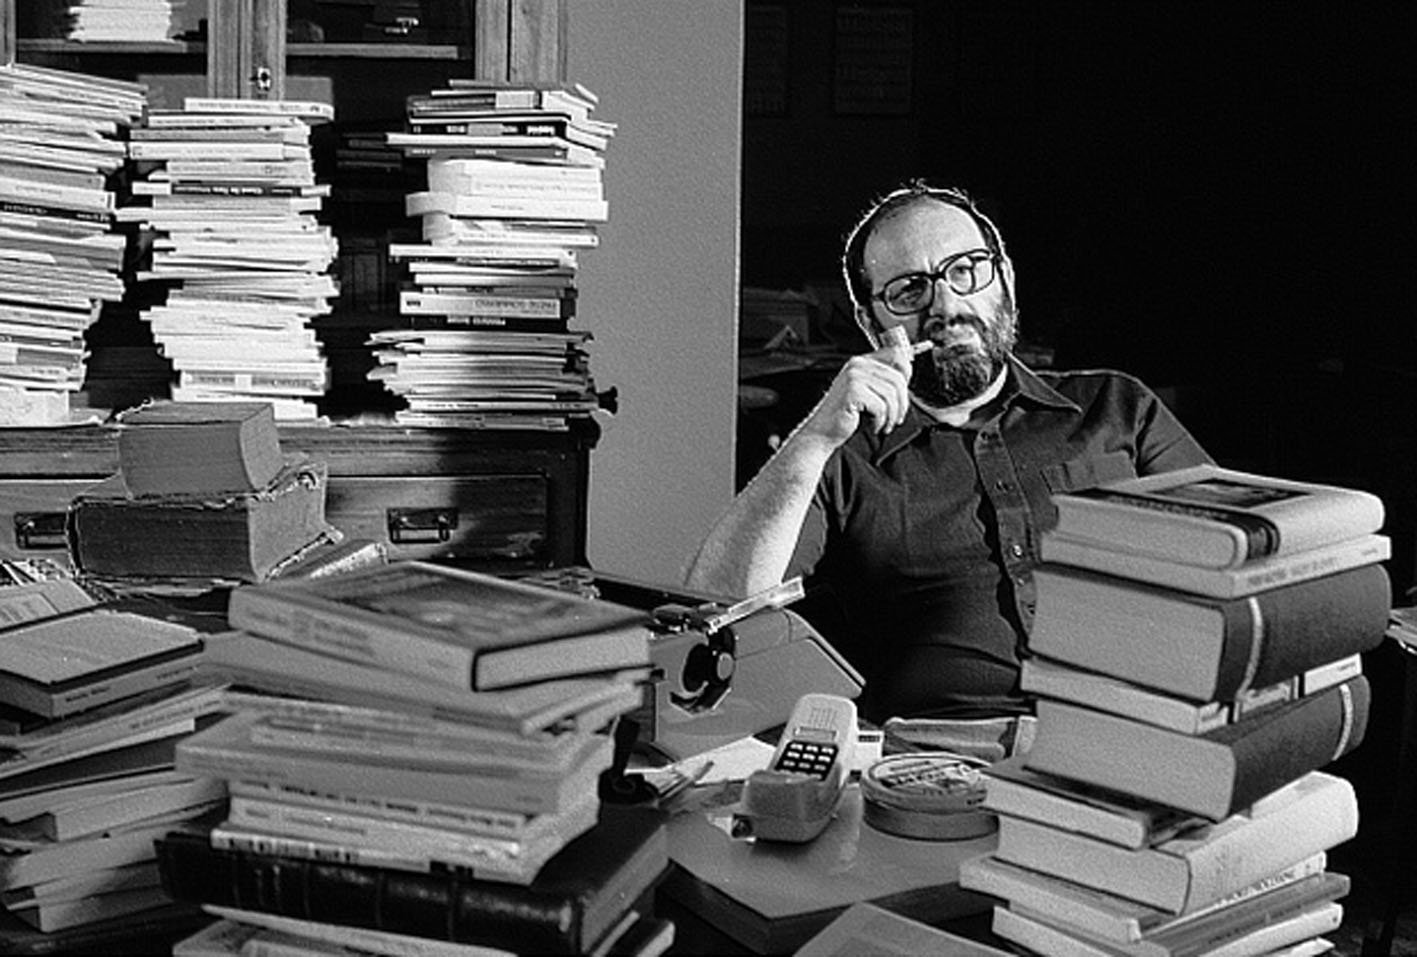 Umberto Eco i George R.R. Martin - najchętniej kupowani autorzy